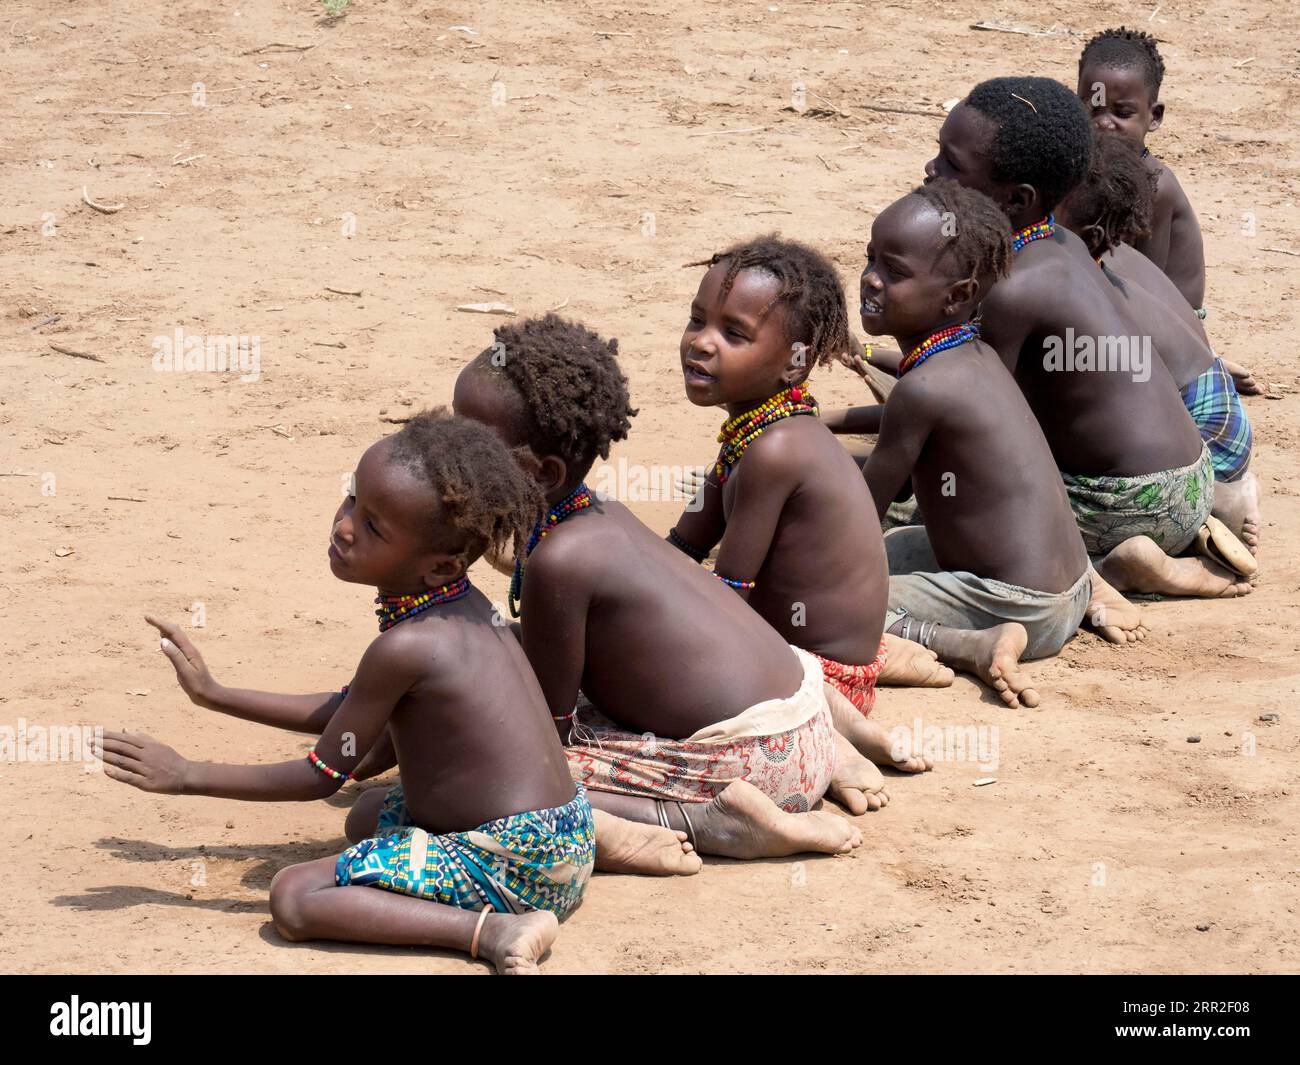 Singende glückliche Kinder sitzen auf sandigem Boden, Dassanech-Stamm, Äthiopien Stockfoto